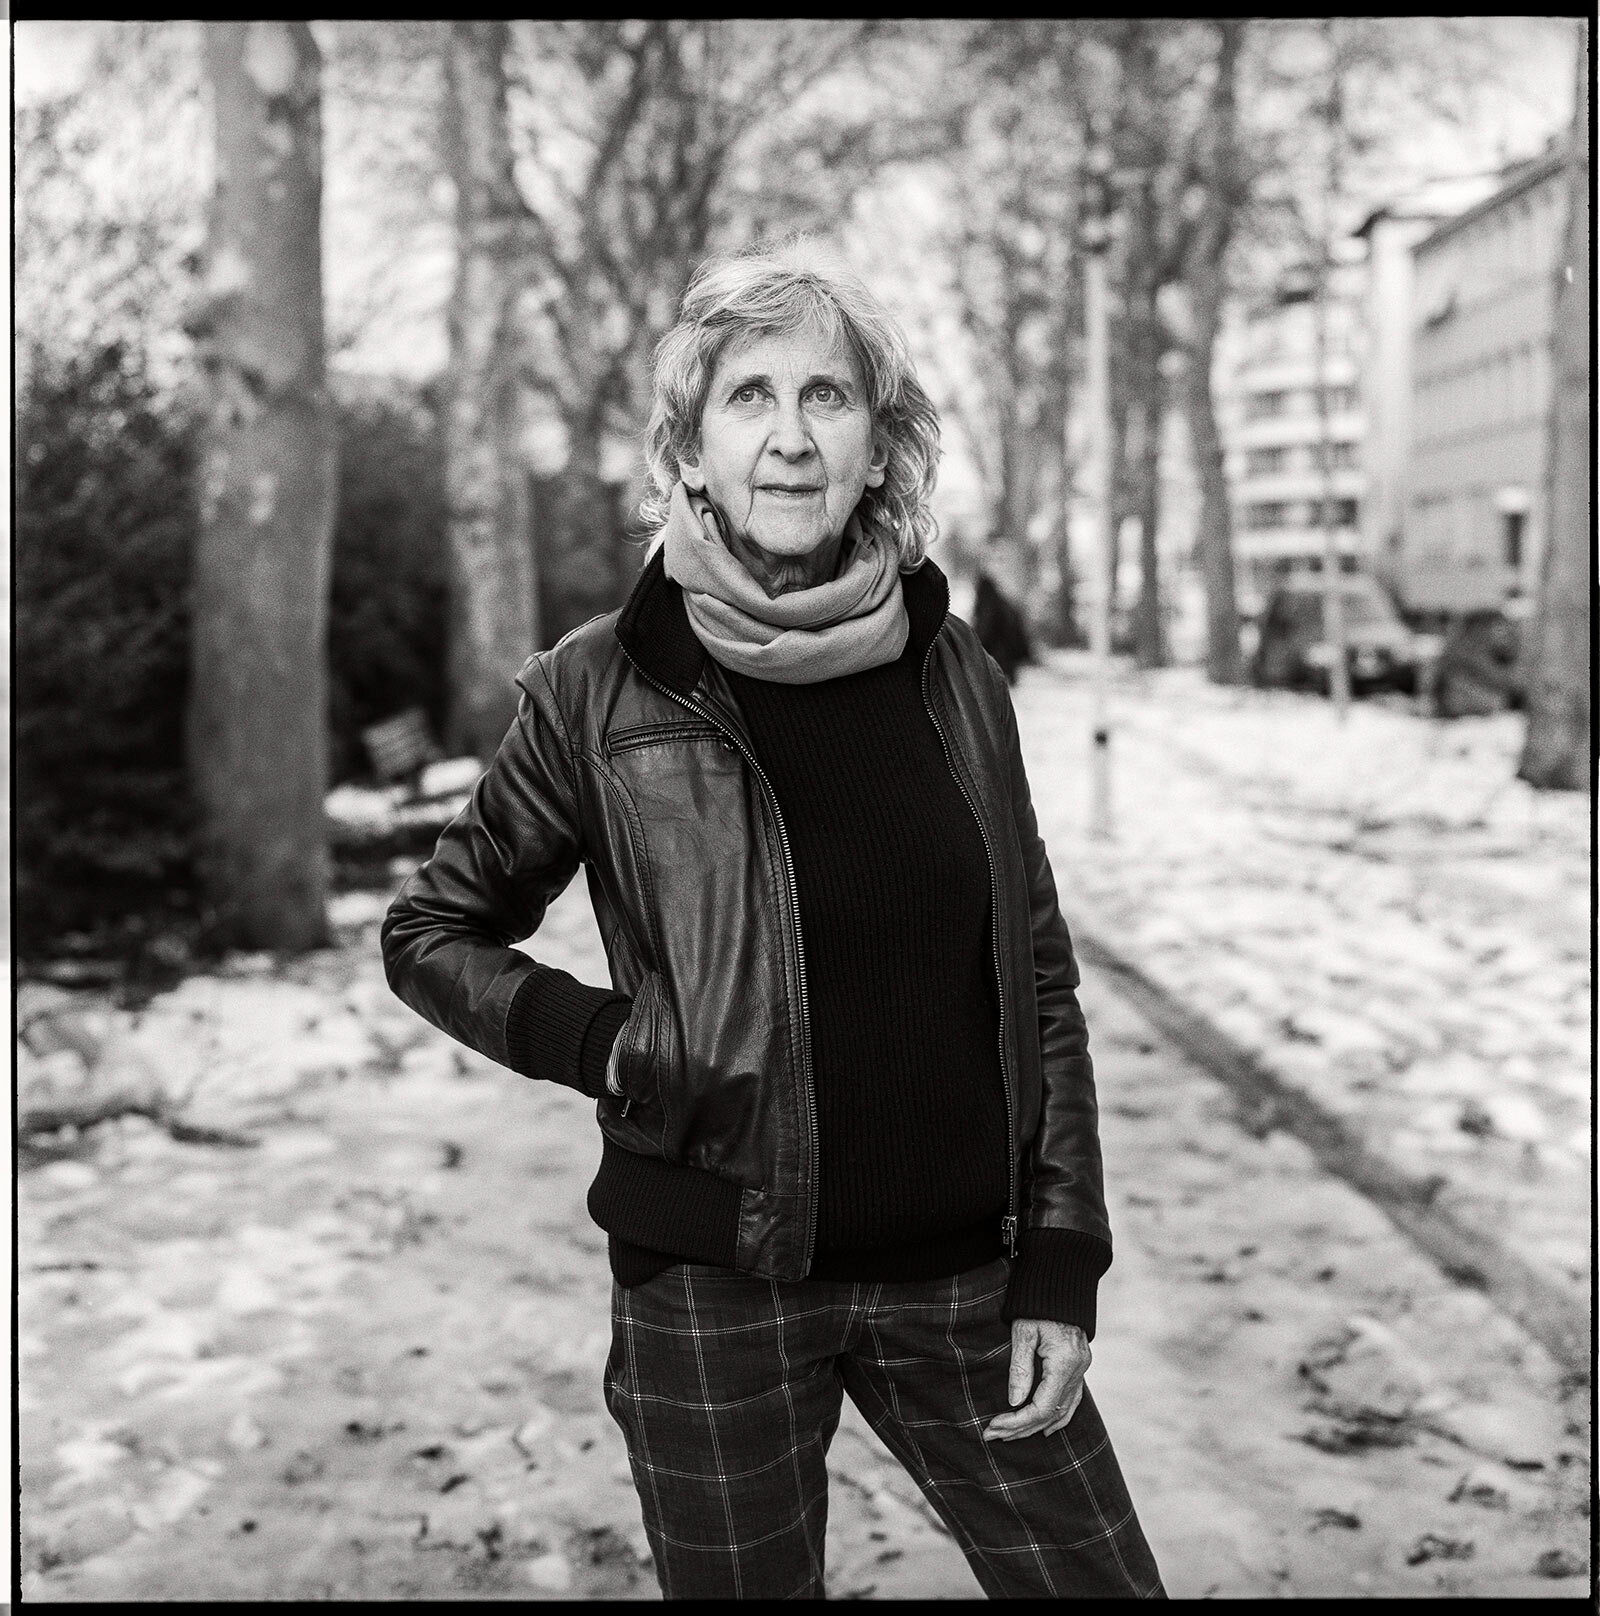 Pia Zanetti, photographer, Zürich, January 2021